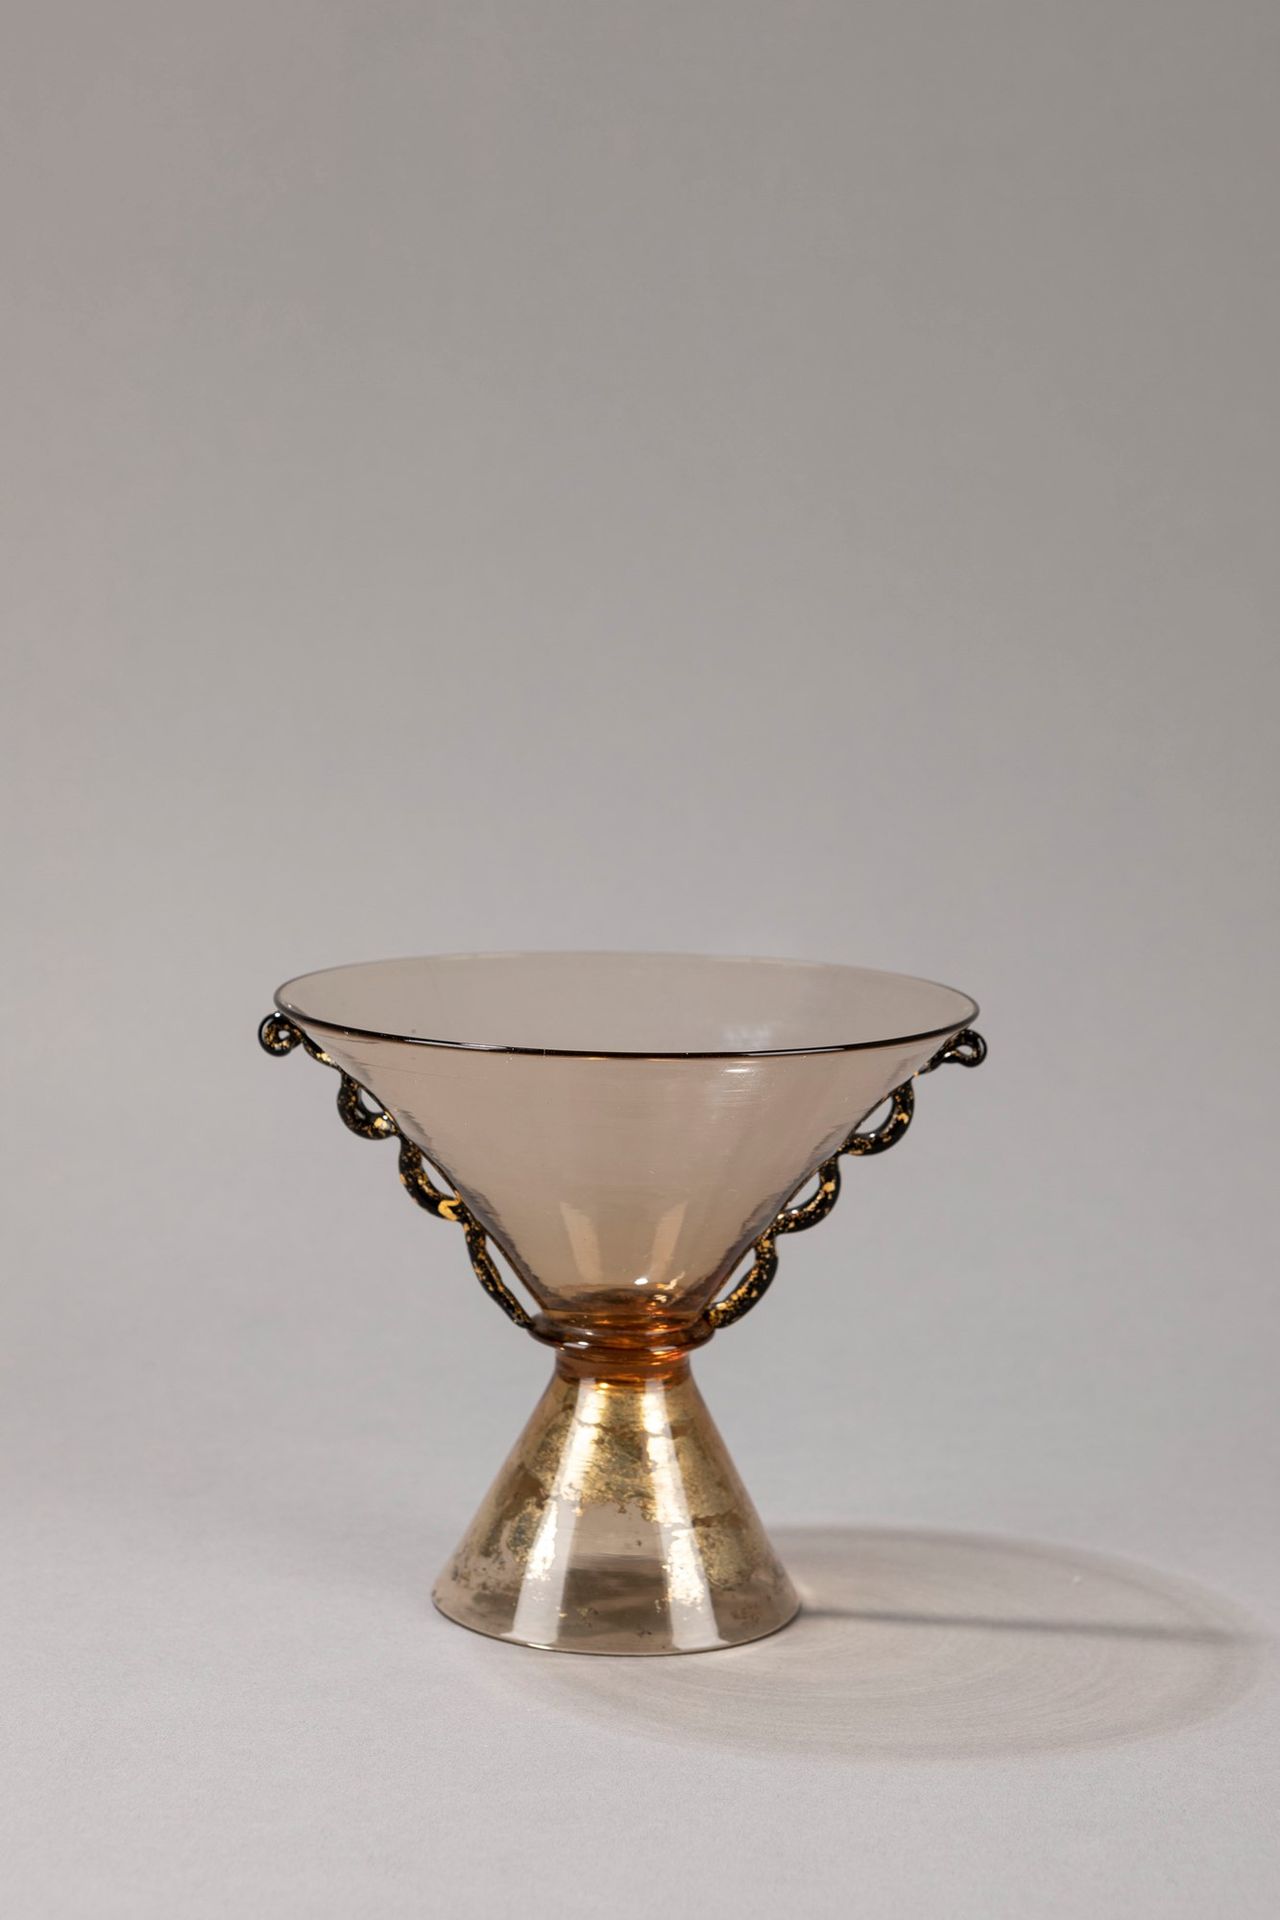 SALIR, Murano 花瓶，1930年约

，高13 x 直径14厘米
吹制玻璃，镜面底座